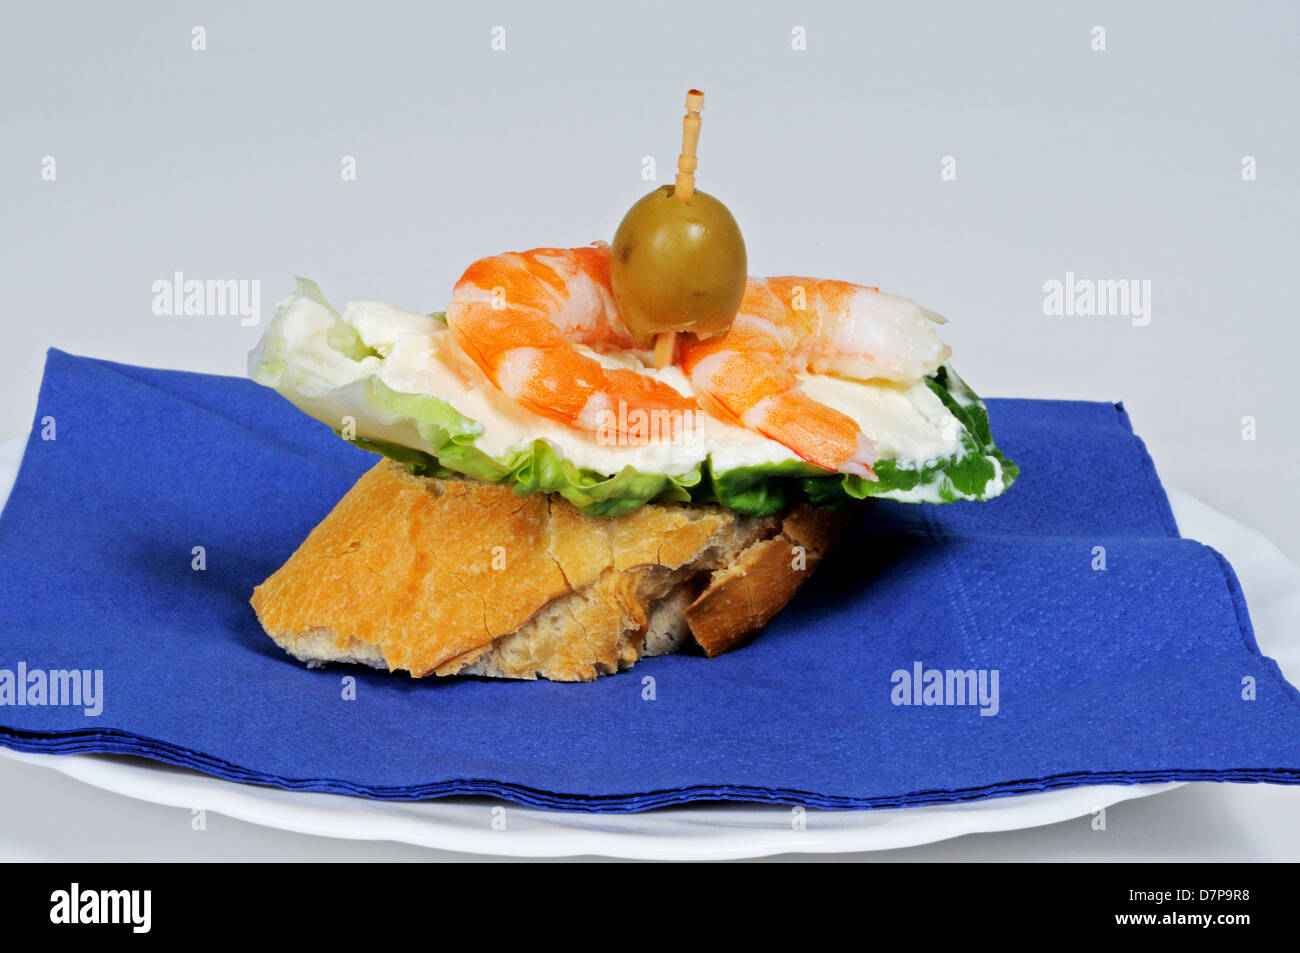 Kopfsalat mit Sahne Käse und Garnelen Tapa garniert mit grünen Oliven und serviert auf knusprigem Brot gefüllt. Stockfoto